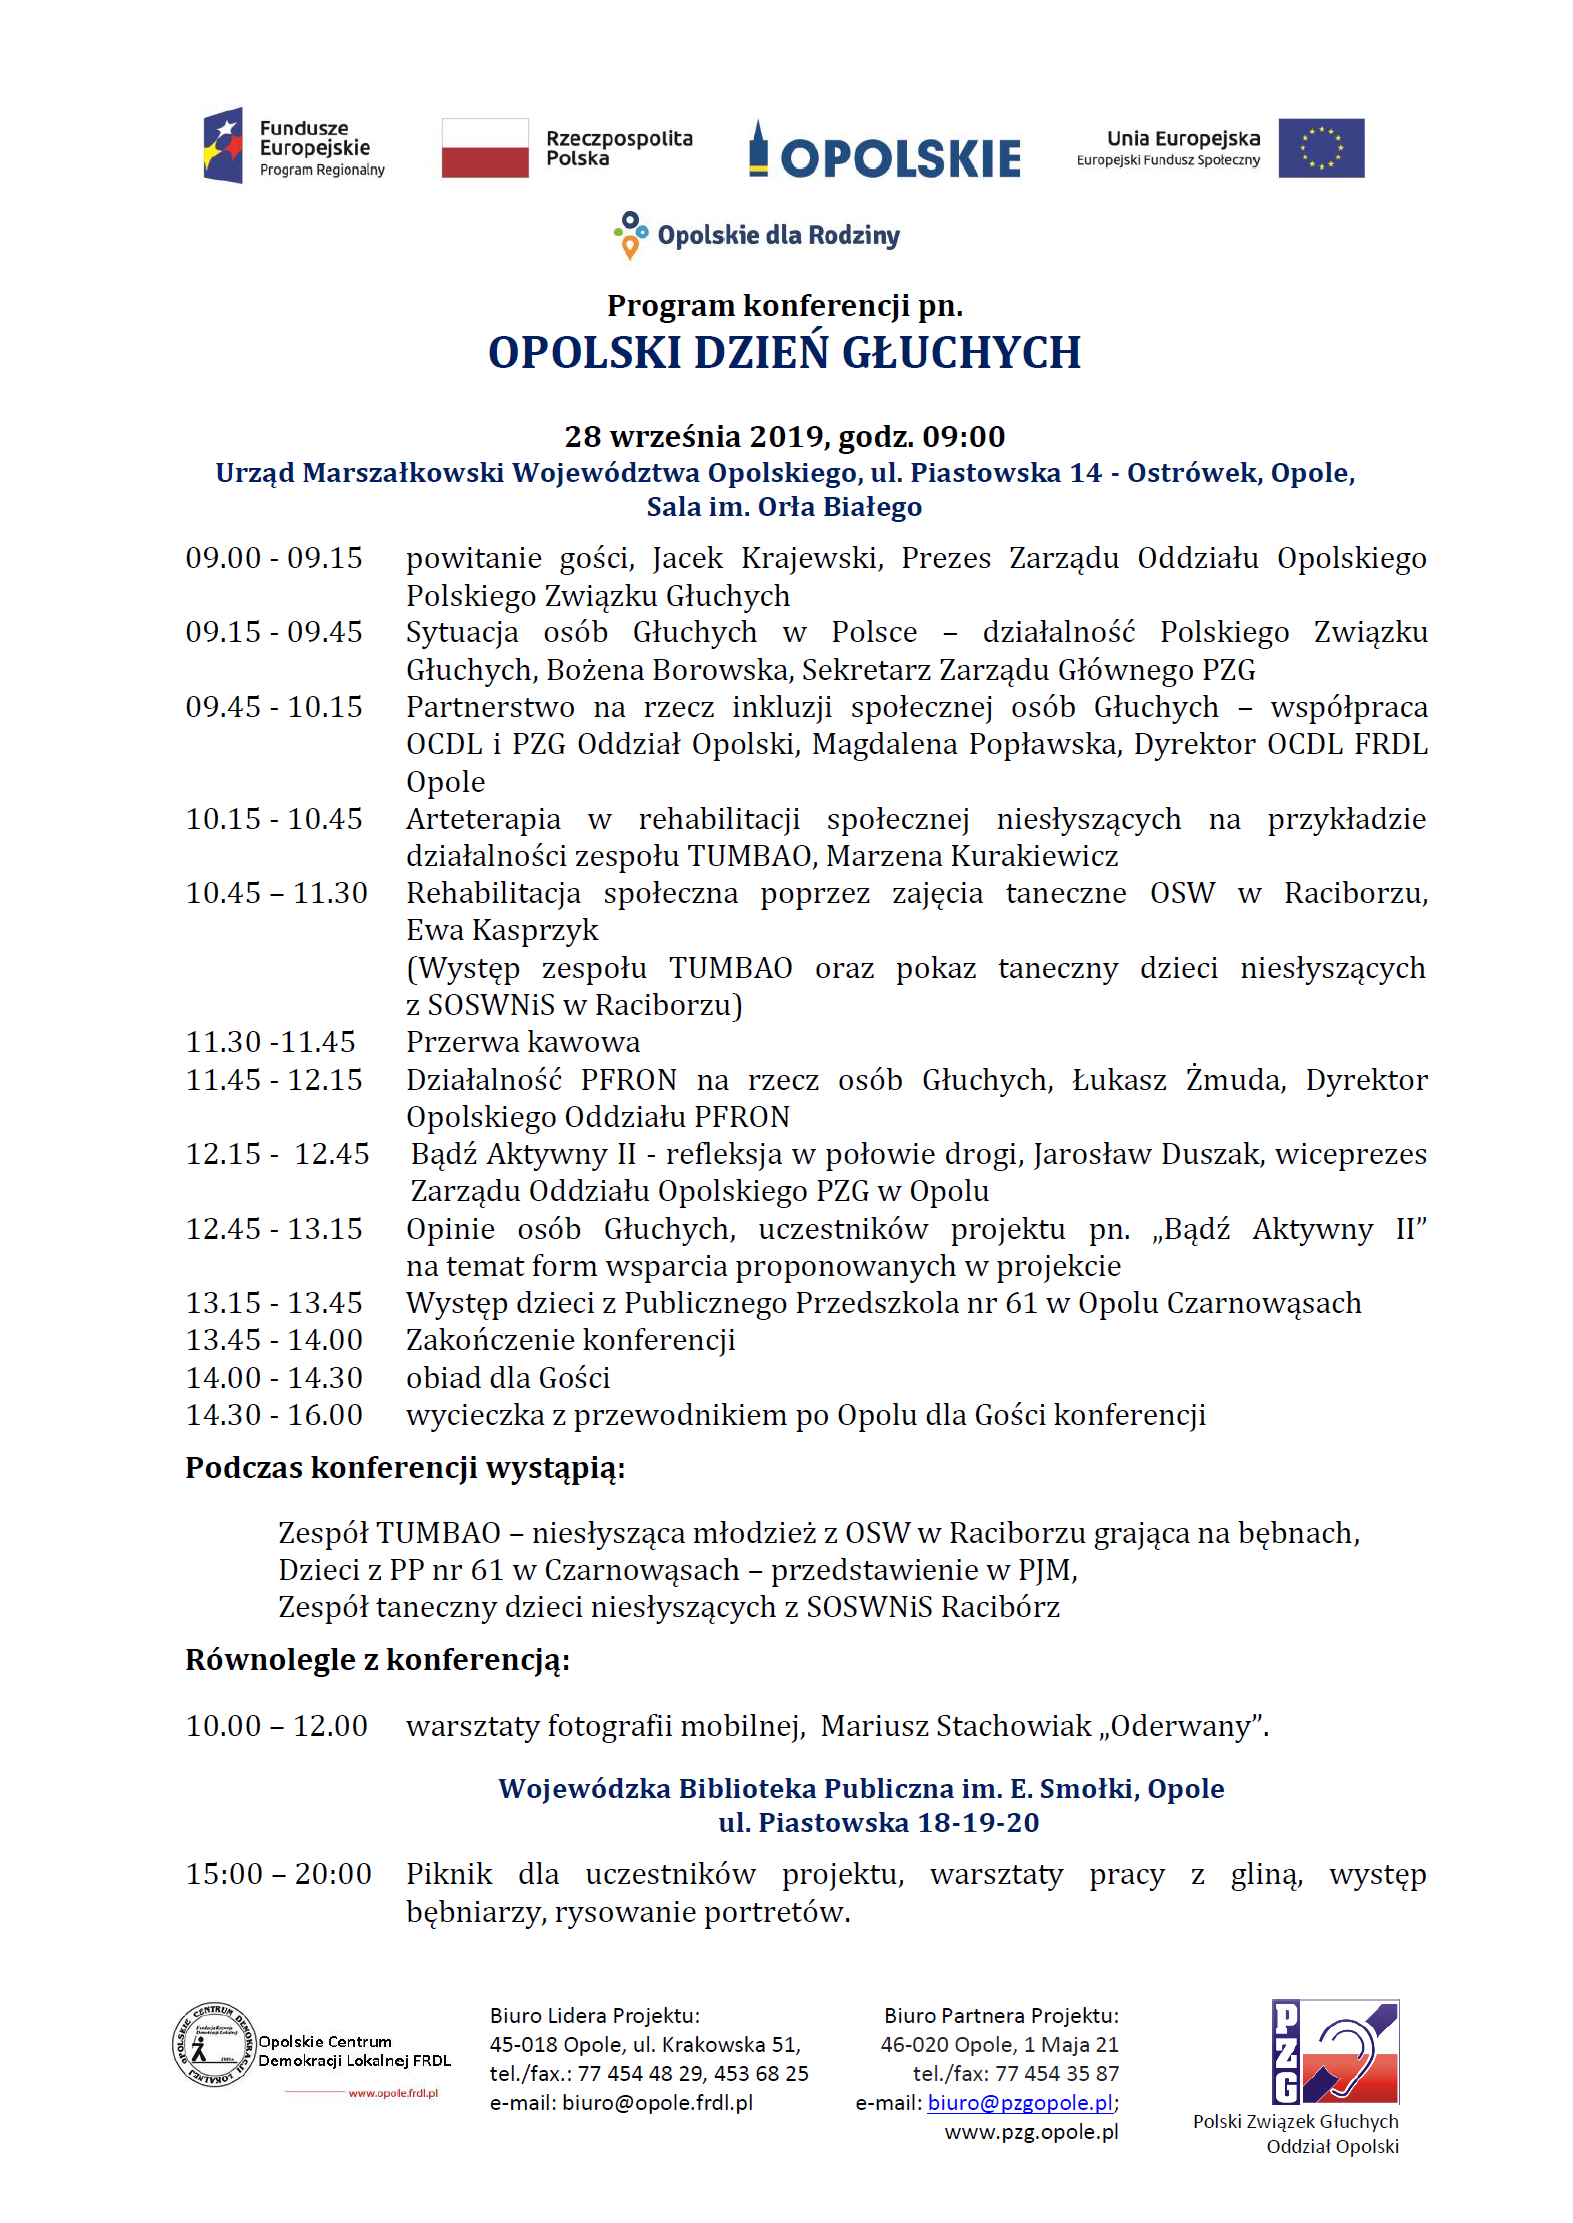 Program Opolskiego Dnia Głuchych, który będzie miał miejsce 28 września 2019 roku.